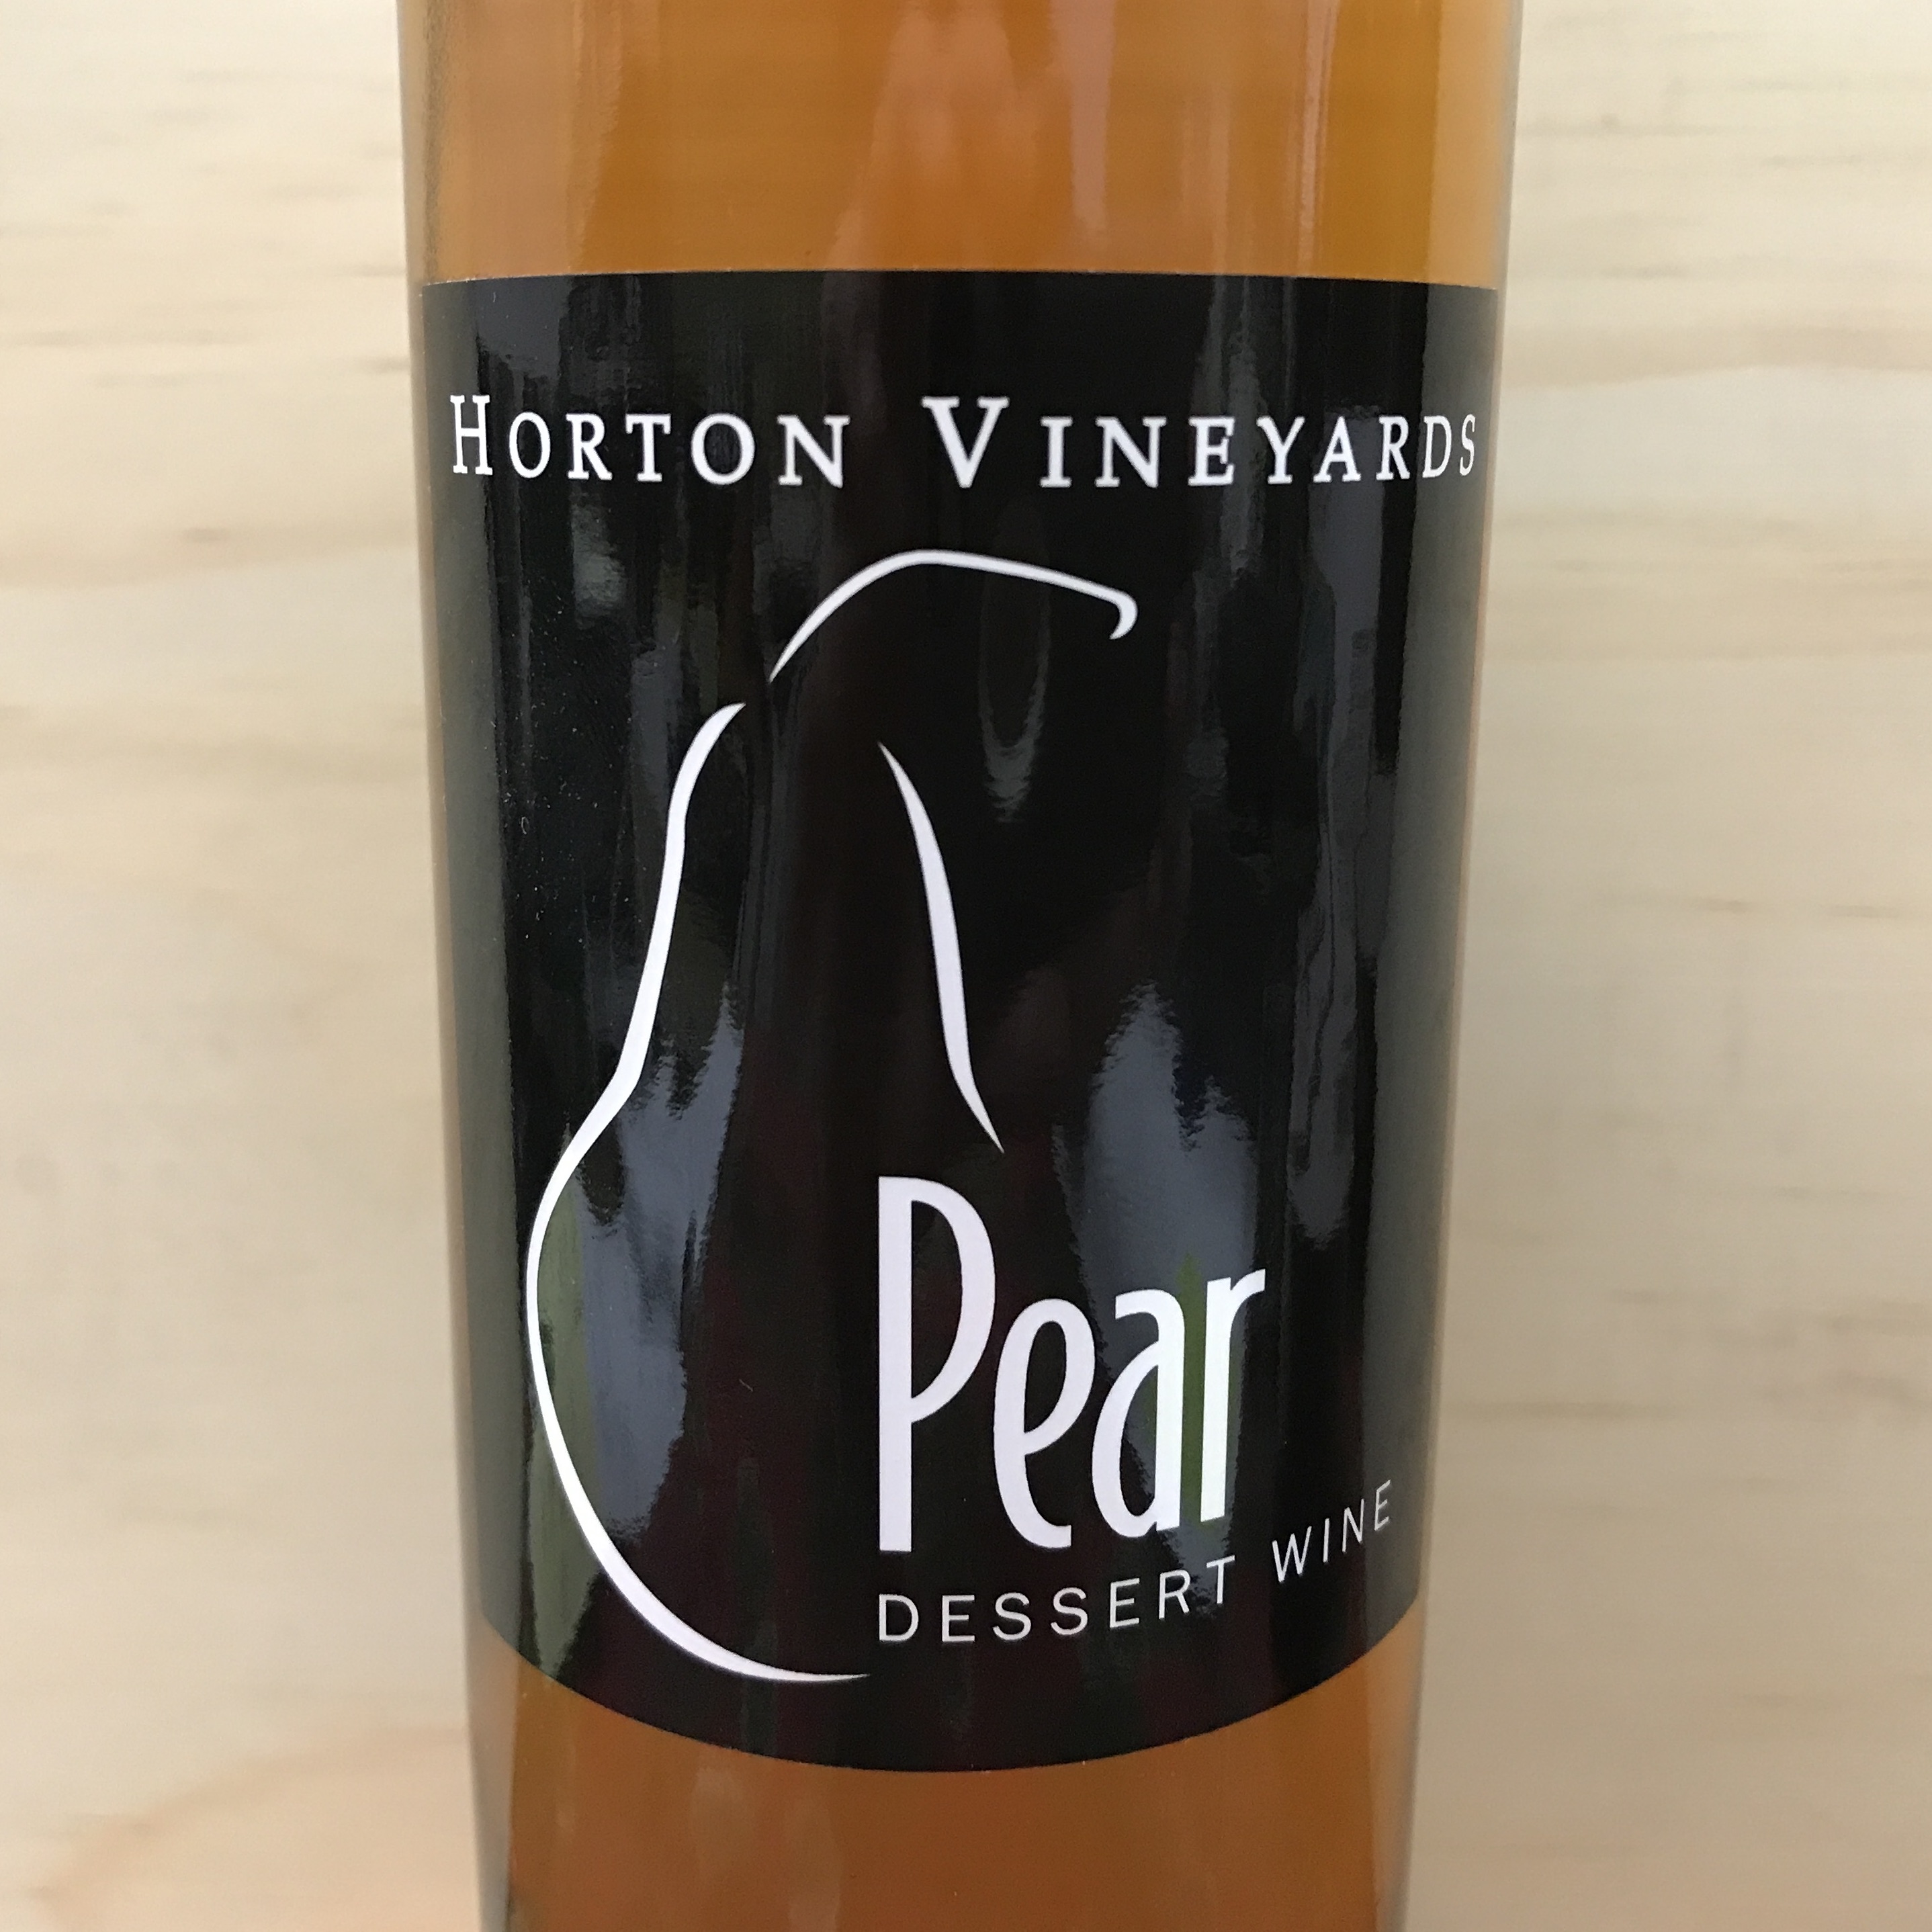 Horton Vineyards Pear desert wine